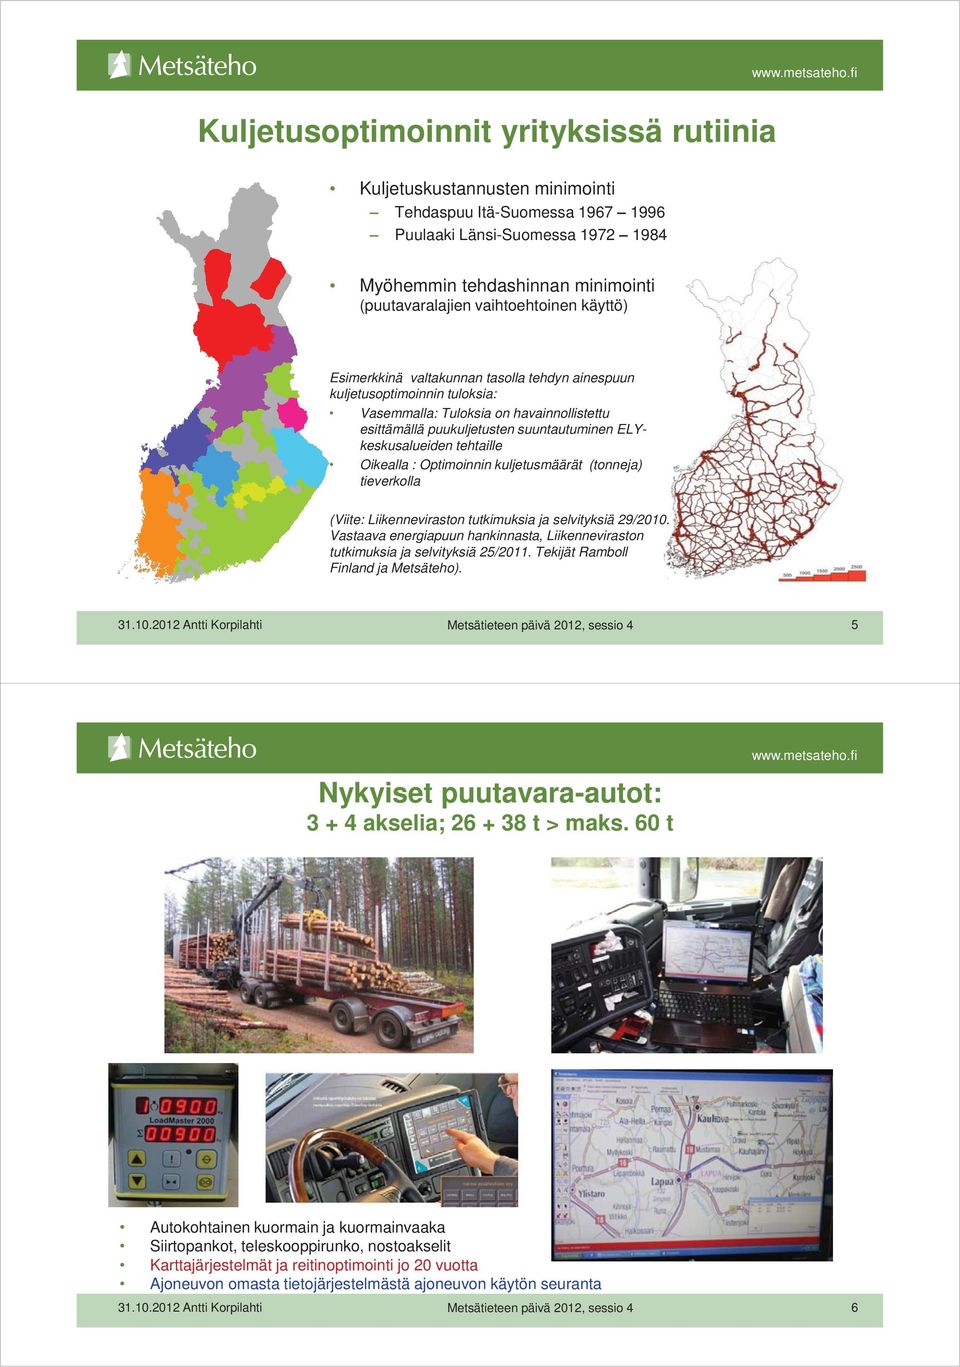 ELYkeskusalueiden tehtaille Oikealla : Optimoinnin kuljetusmäärät (tonneja) tieverkolla (Viite: Liikenneviraston tutkimuksia ja selvityksiä 29/2010.